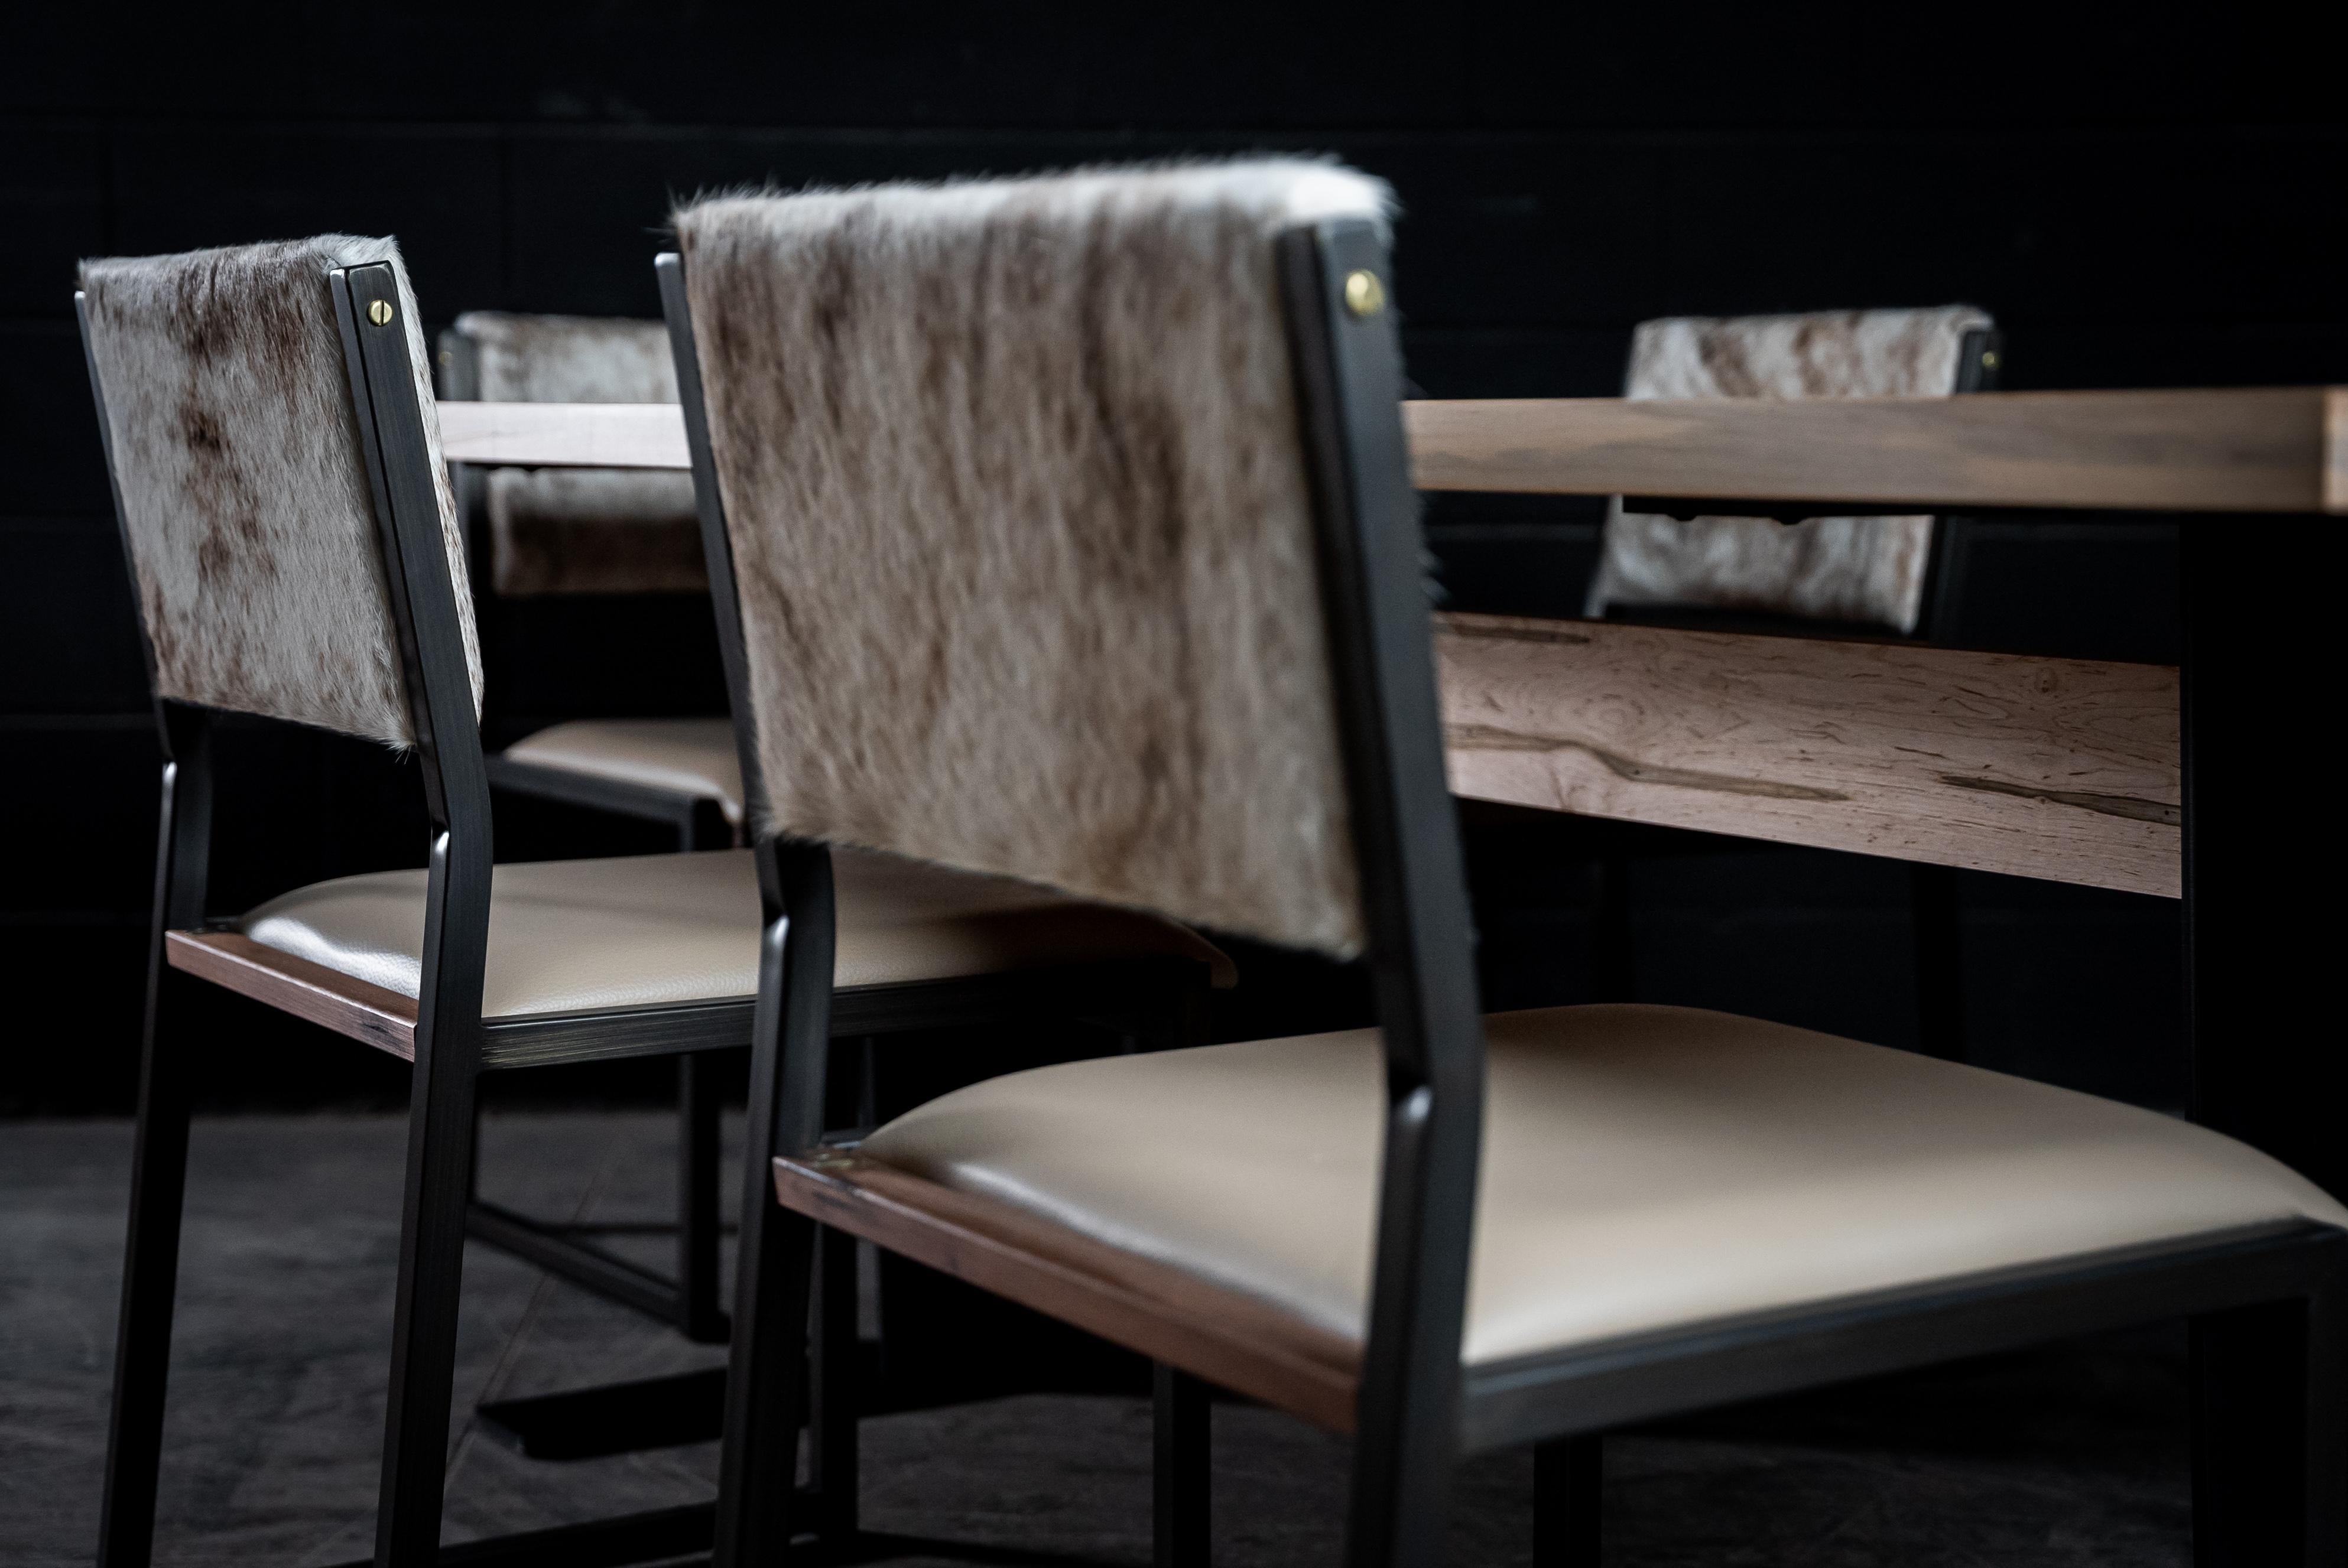 La chaise Shakers est fabriquée à la main sur commande à partir de notre cadre tubulaire unique en bronze brossé, avec un siège en cuir véritable et un dossier en cuir de vache. L'insertion subtile de bois massif donnera une touche chaleureuse et